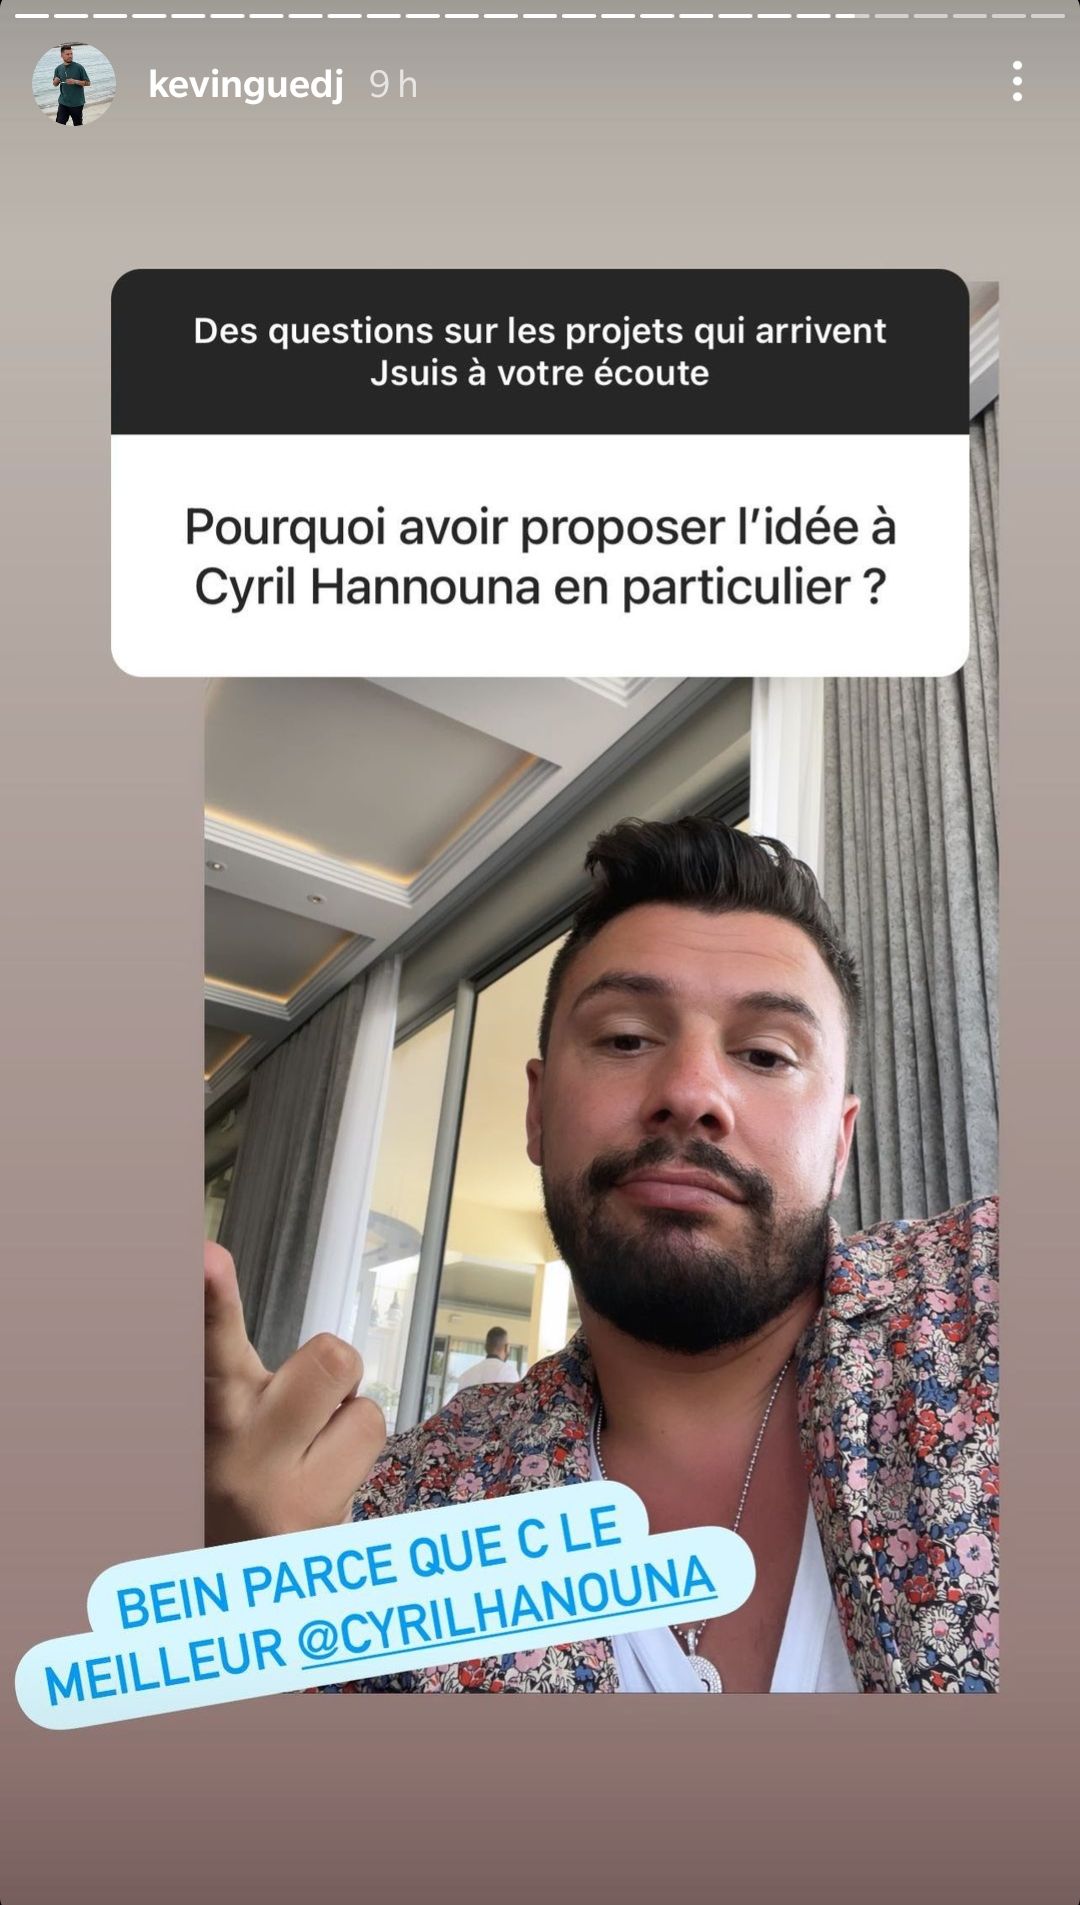  Le message de Kevin Guedj aux Marseillais @Instagram